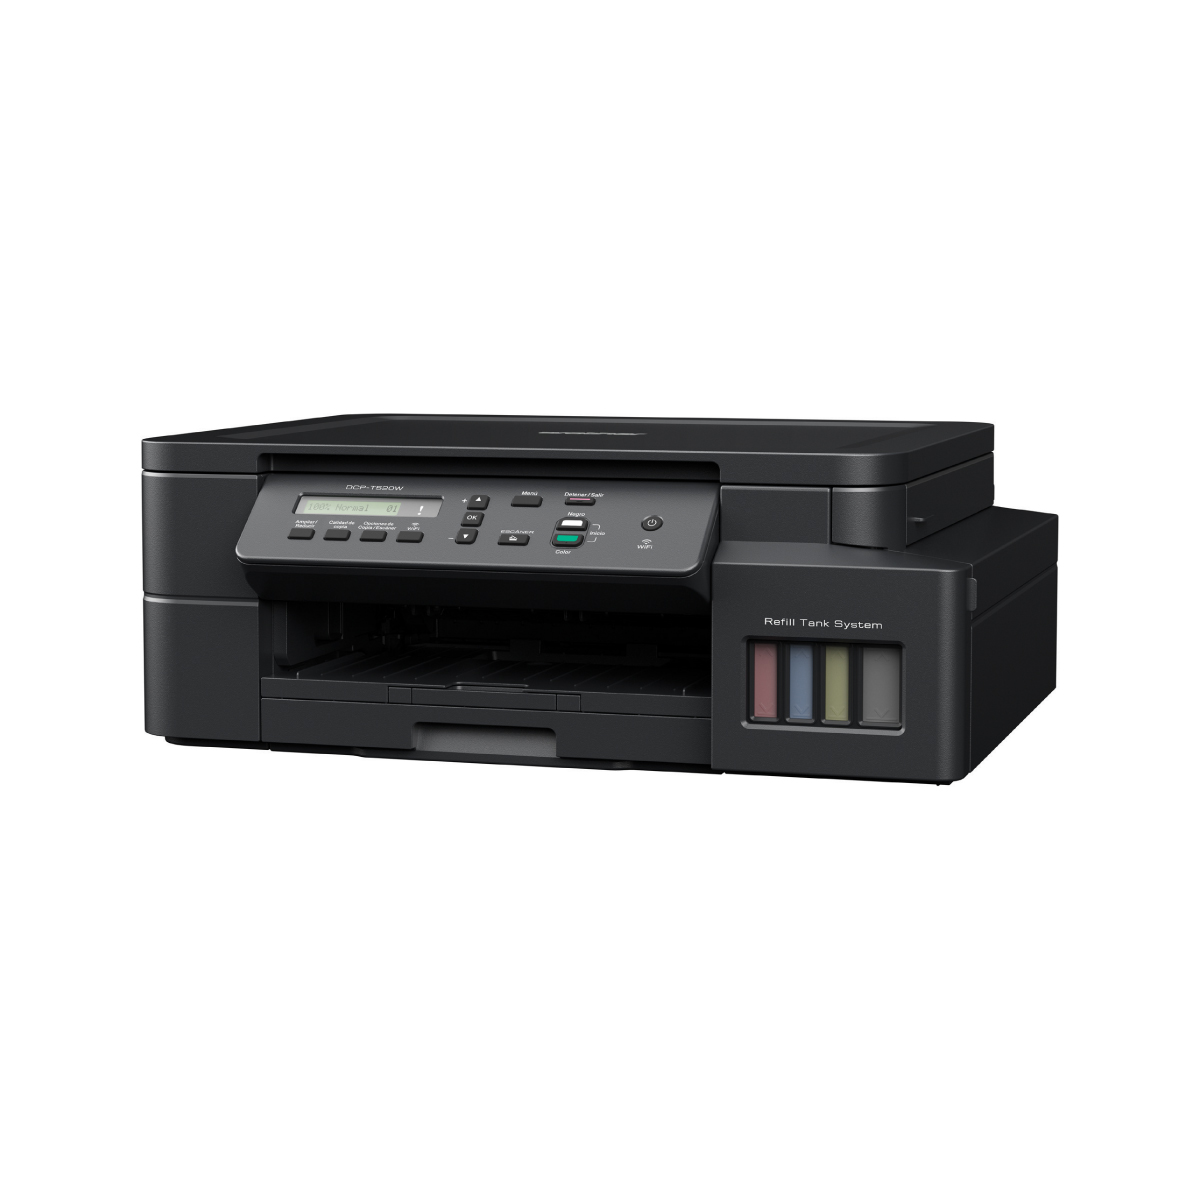 Impresora Multifuncional Brother DCP-T520W de Inyección de tinta a color con conexión WiFi